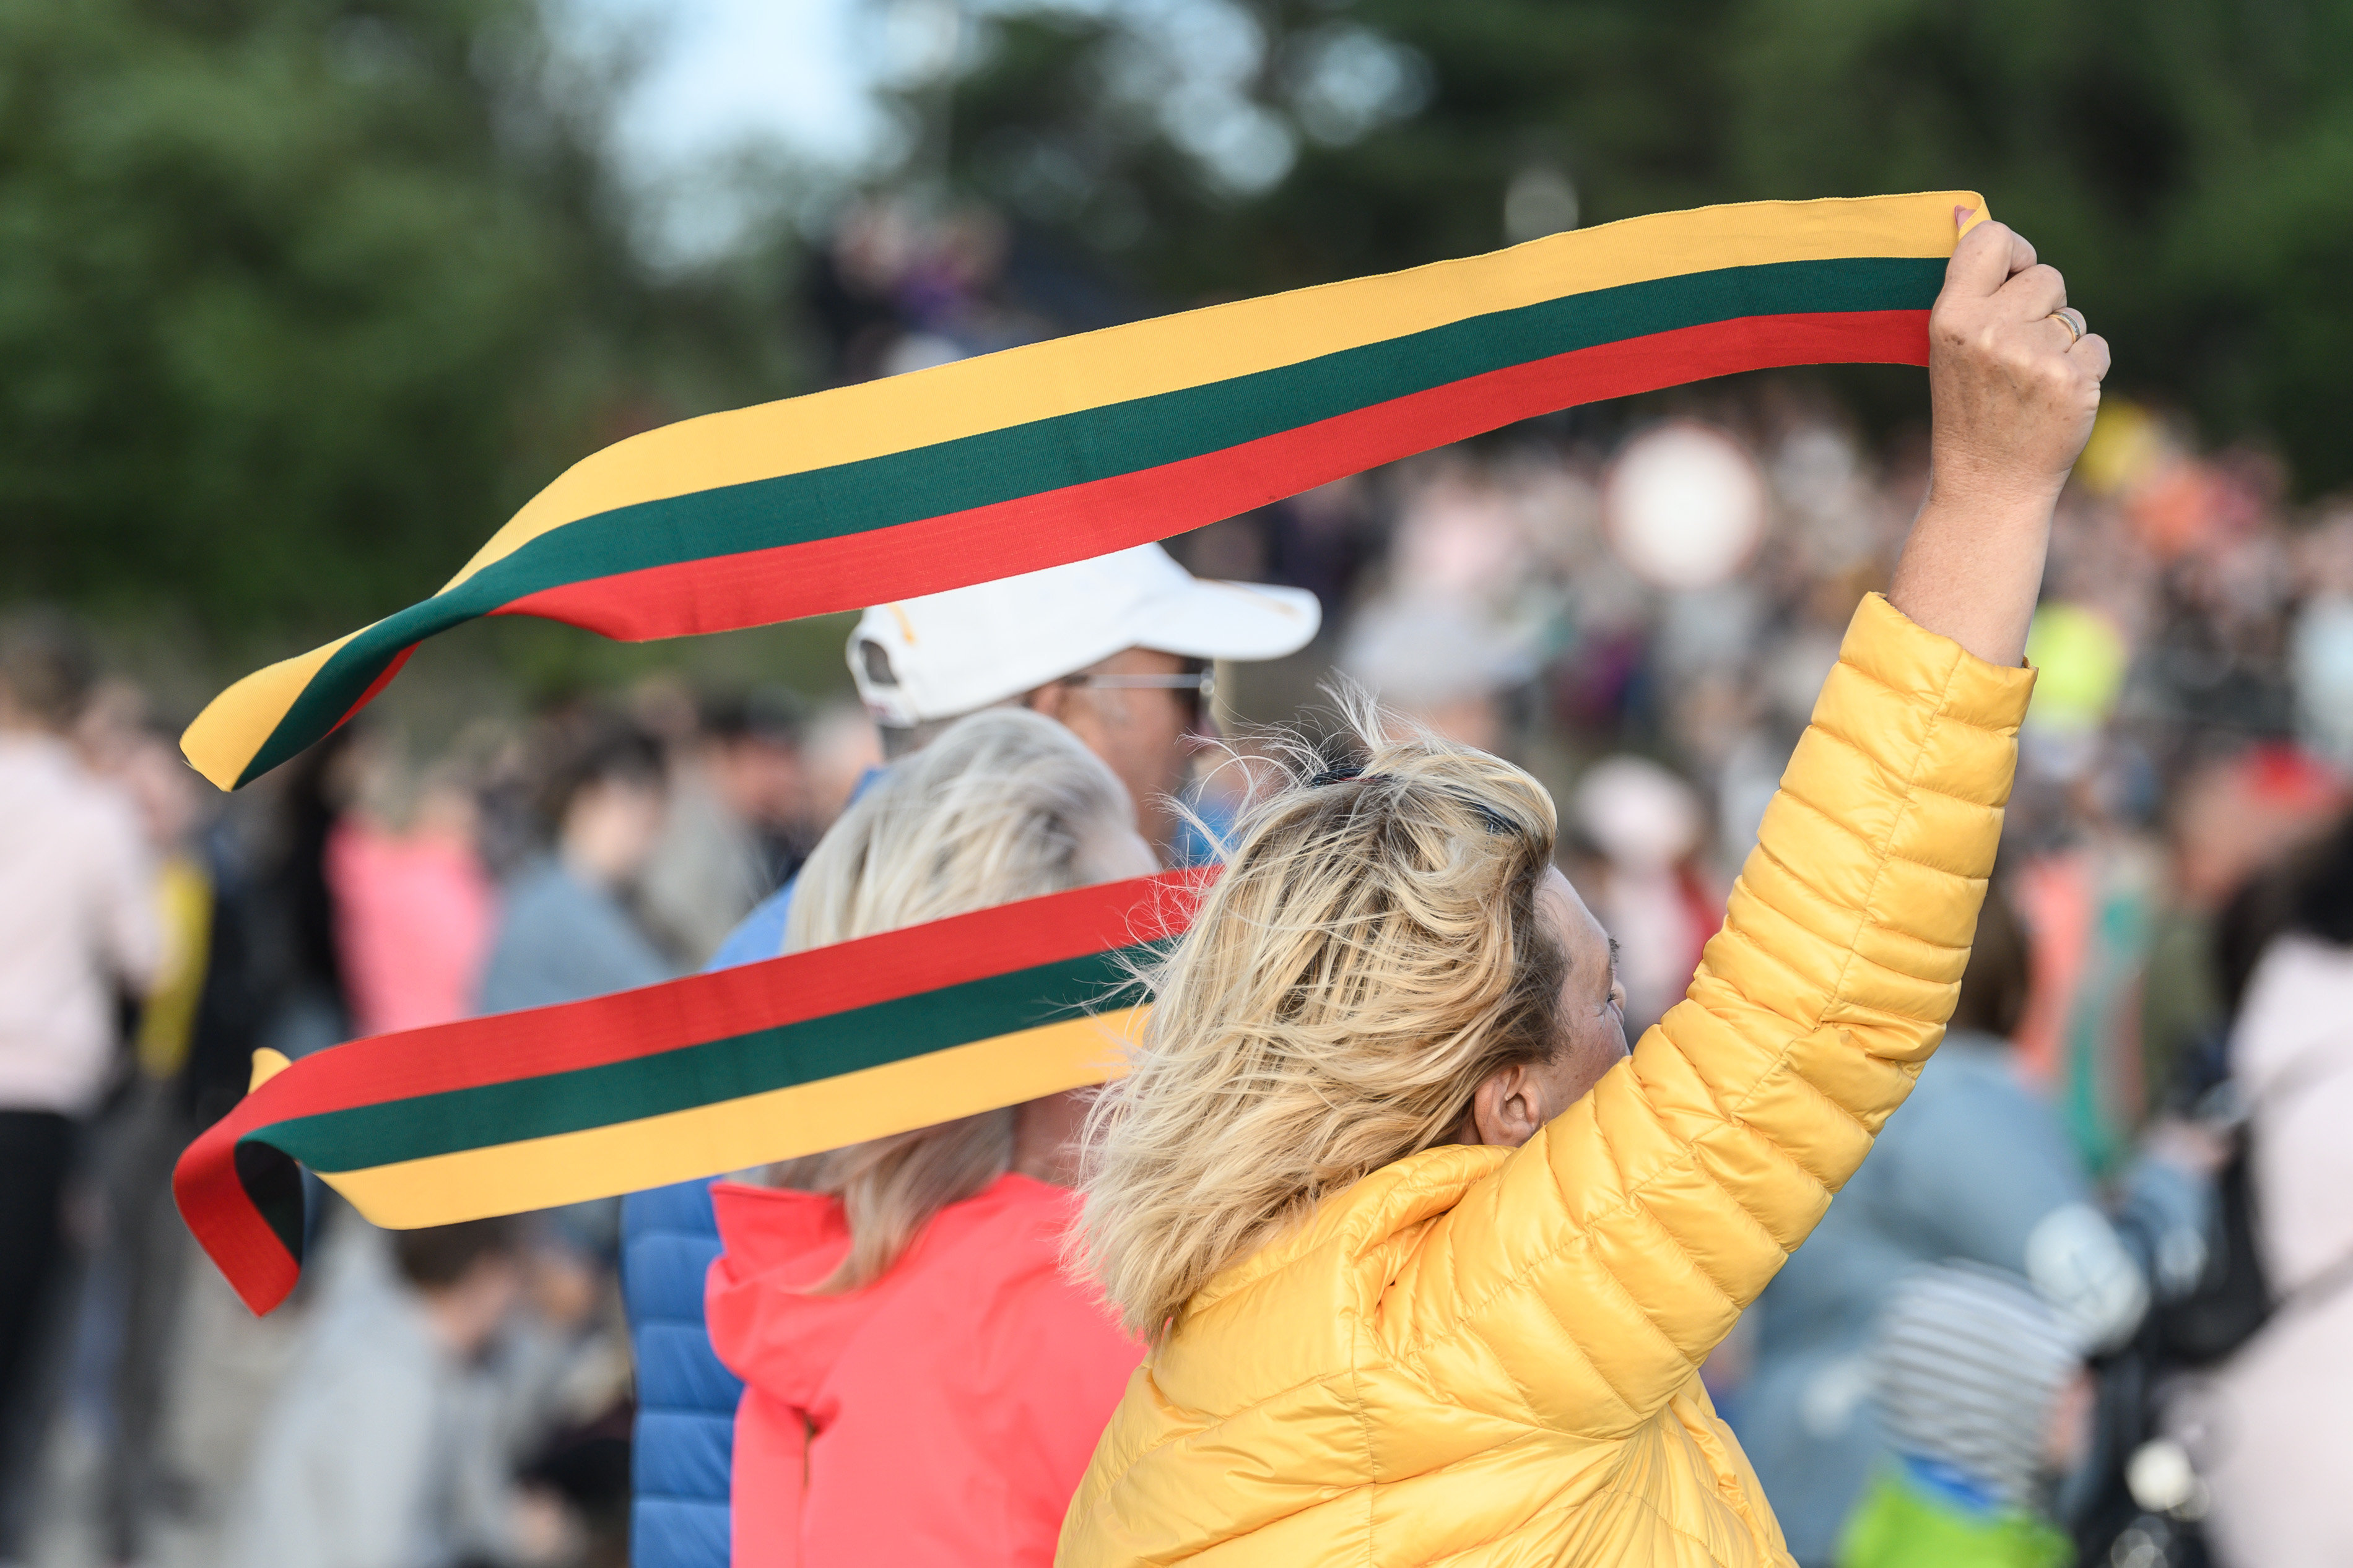 Valstybės diena – valstybinė Lietuvos šventė, švenčiama liepos 6 d. minint pirmojo ir vienintelio Lietuvos karaliaus Mindaugo karūnaciją.V.Skaraičio nuotr.